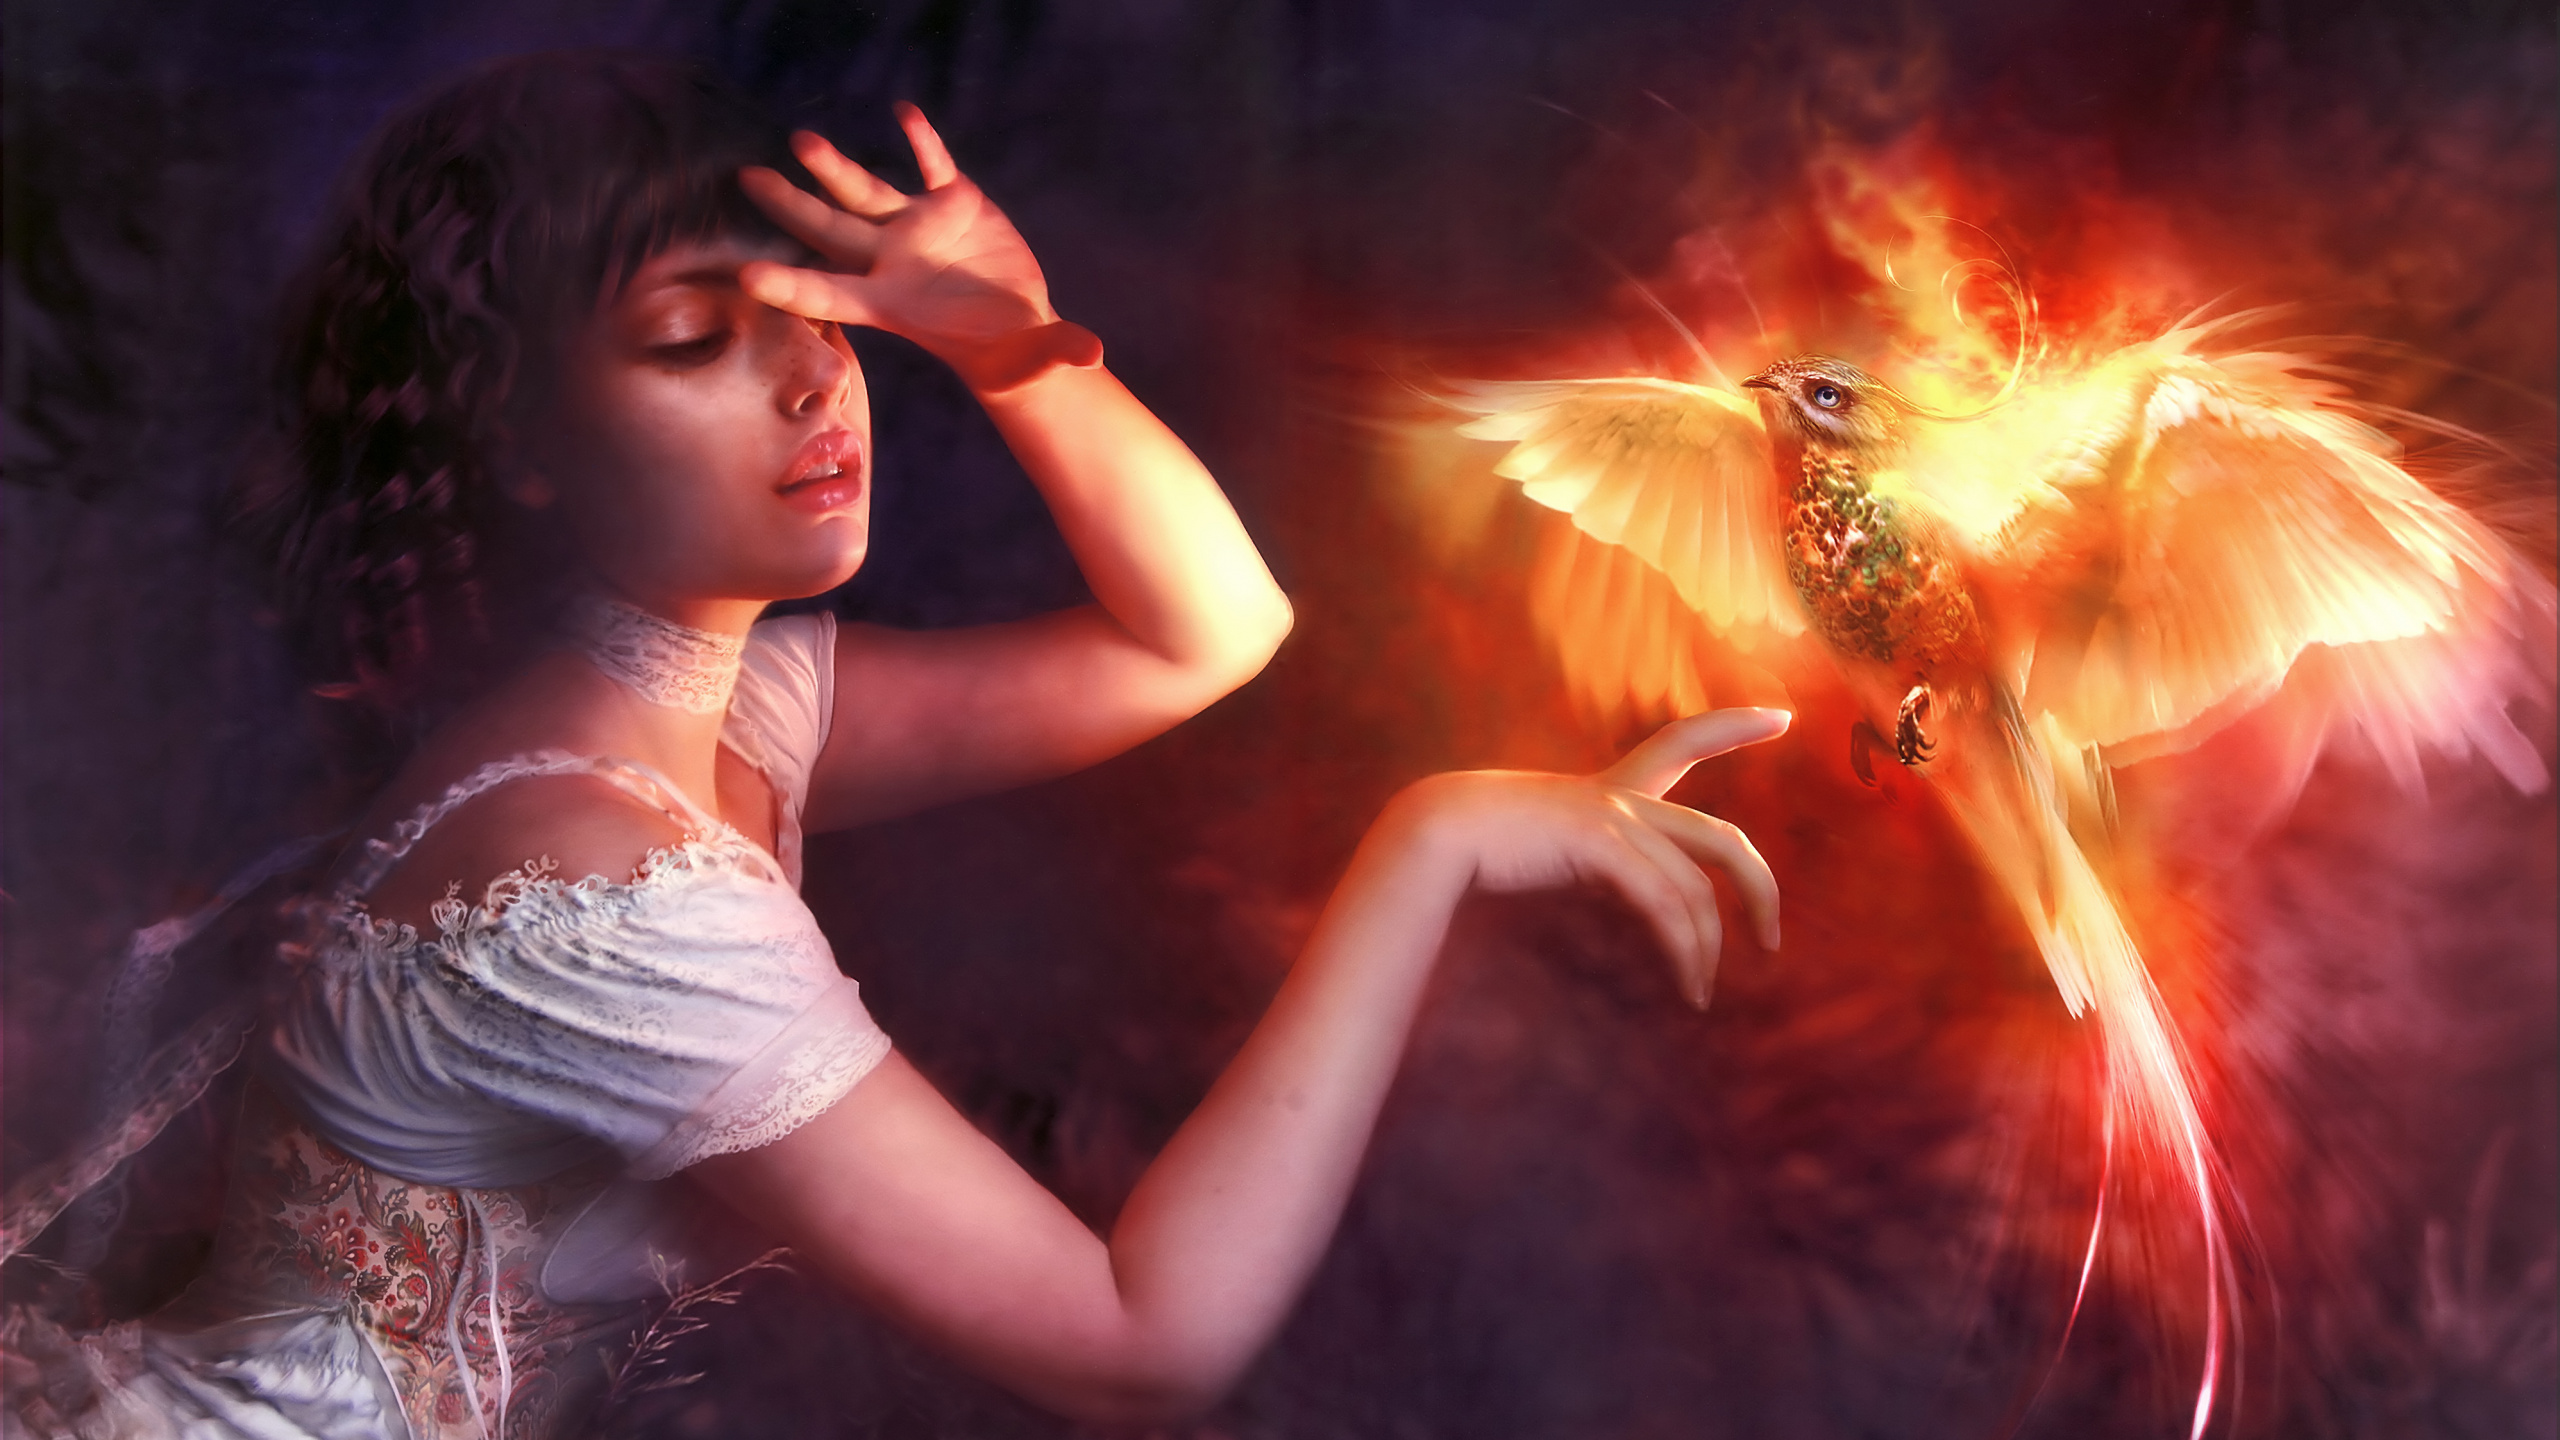 Обои птица феникс с девушкой, Феникс, СУБД Firebird, освещение, Апельсин в разрешении 2560x1440